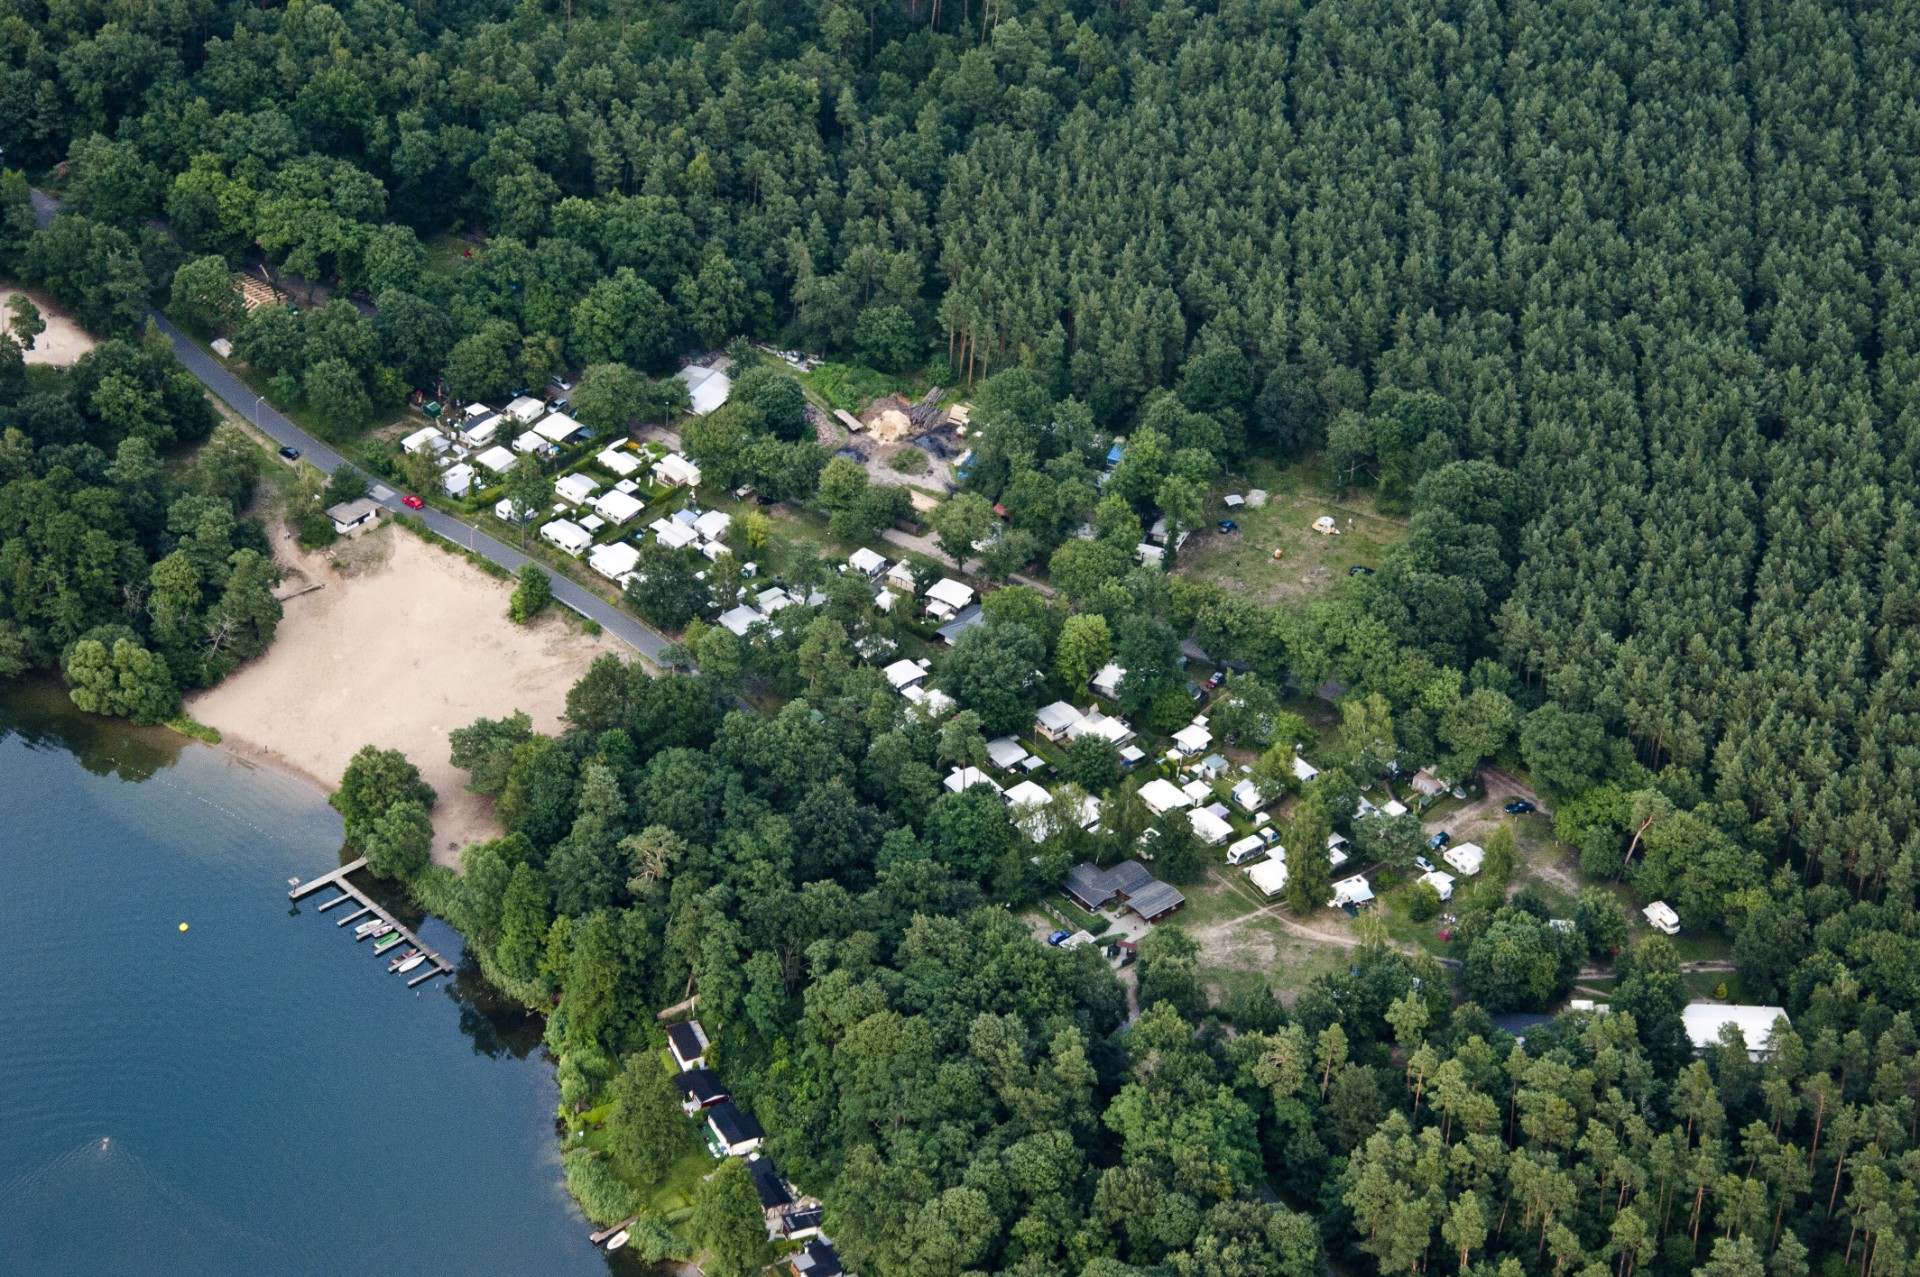 (c) Camping-gruenheide.de